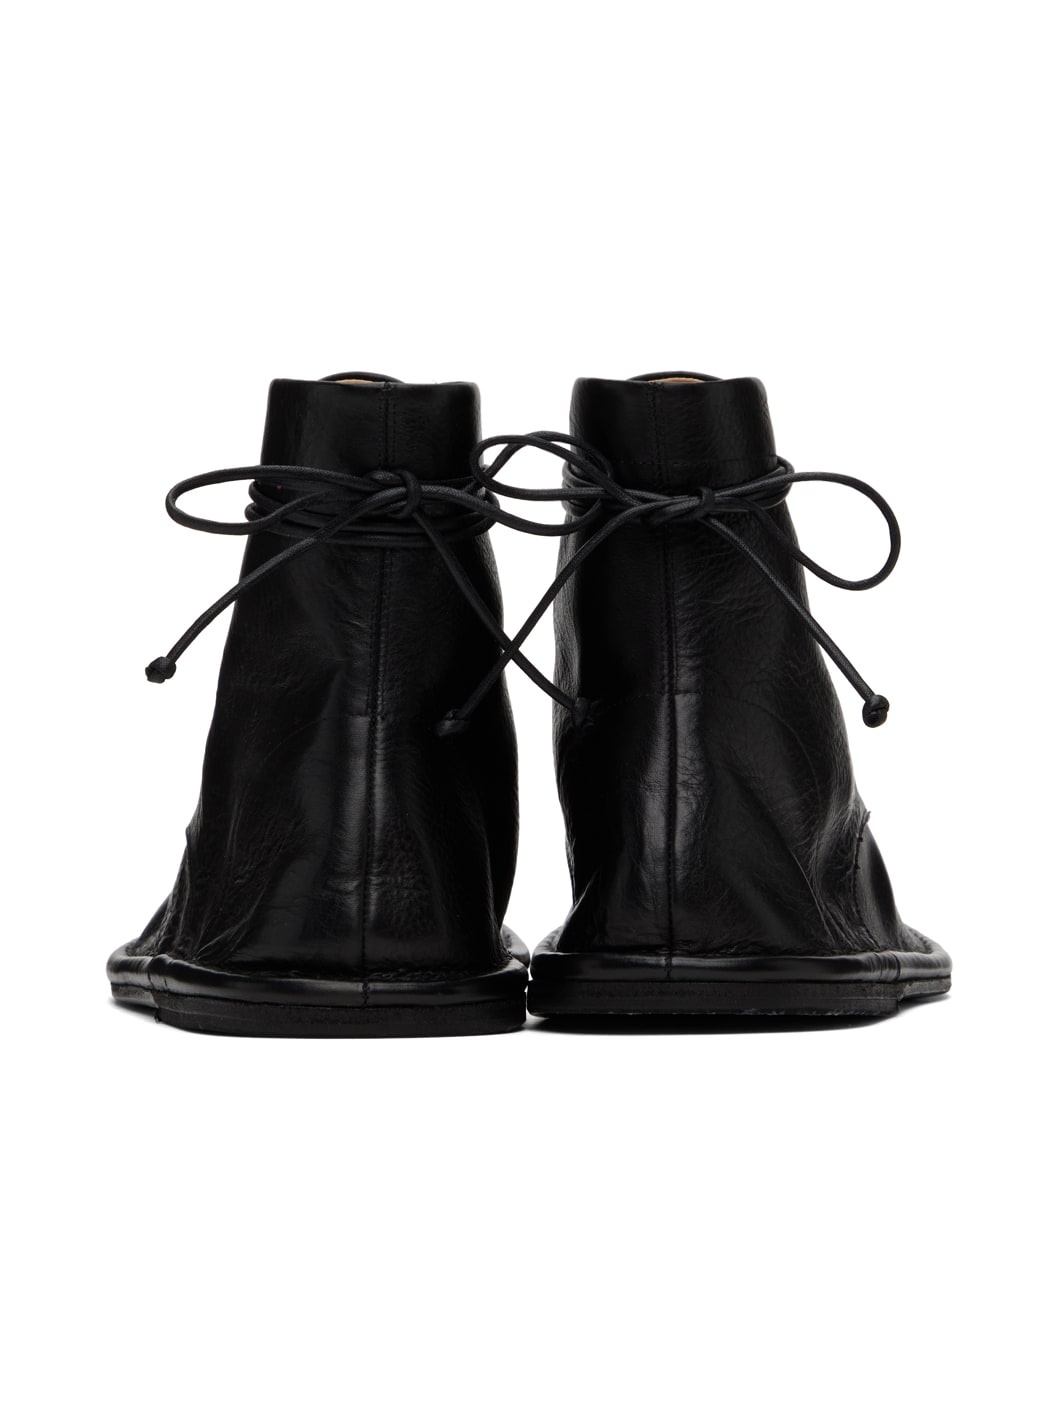 Black Filo Boots - 2